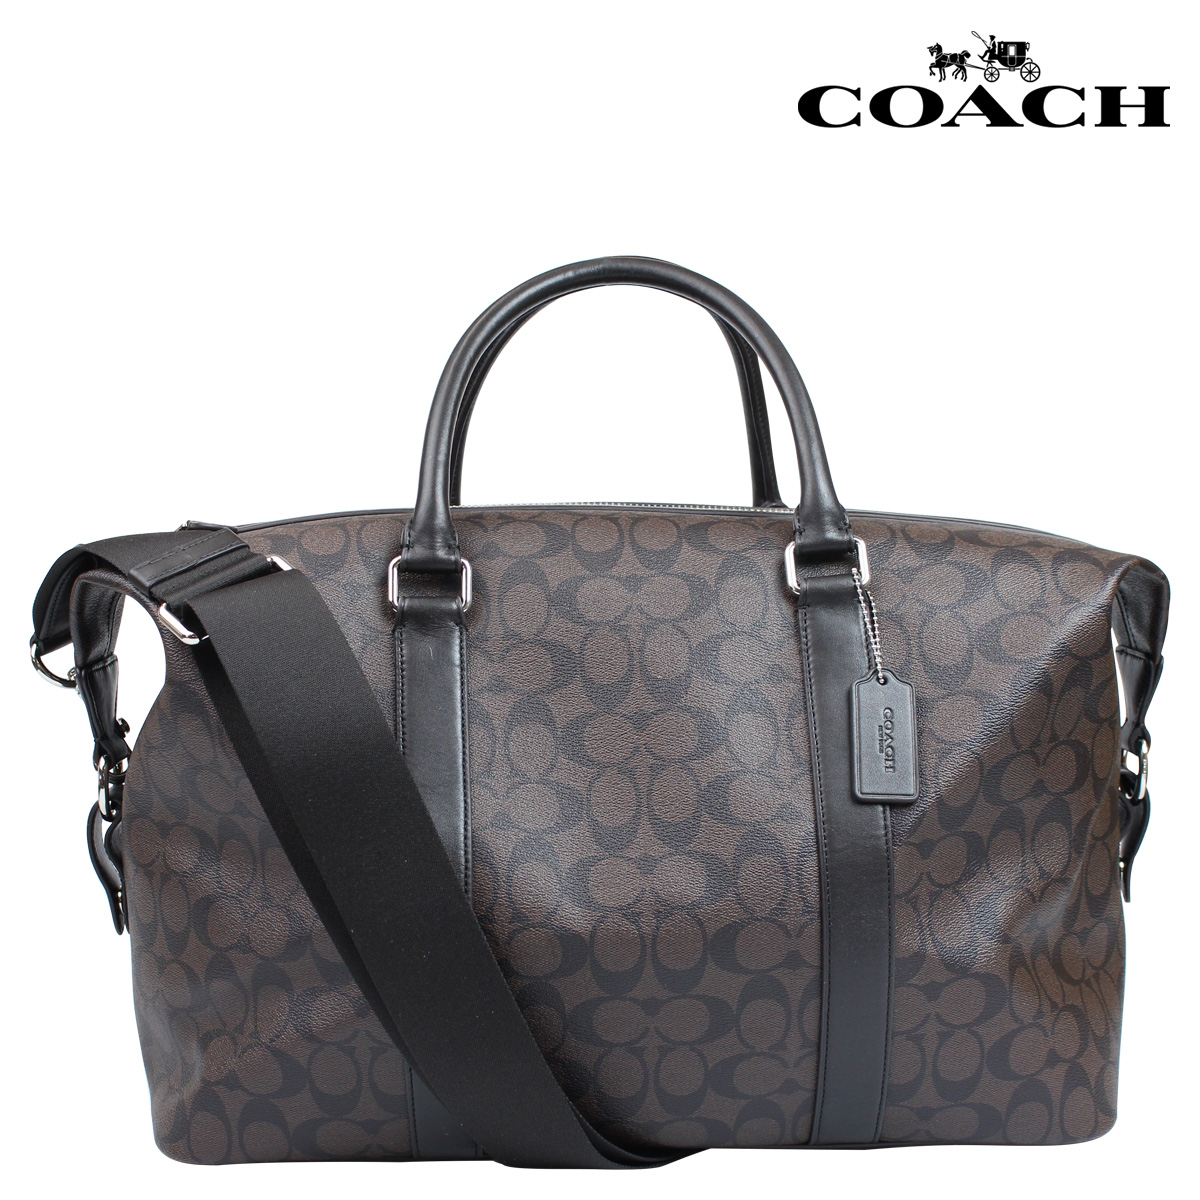 Sugar Online Shop | Rakuten Global Market: Coach COACH bag bag duffel ...